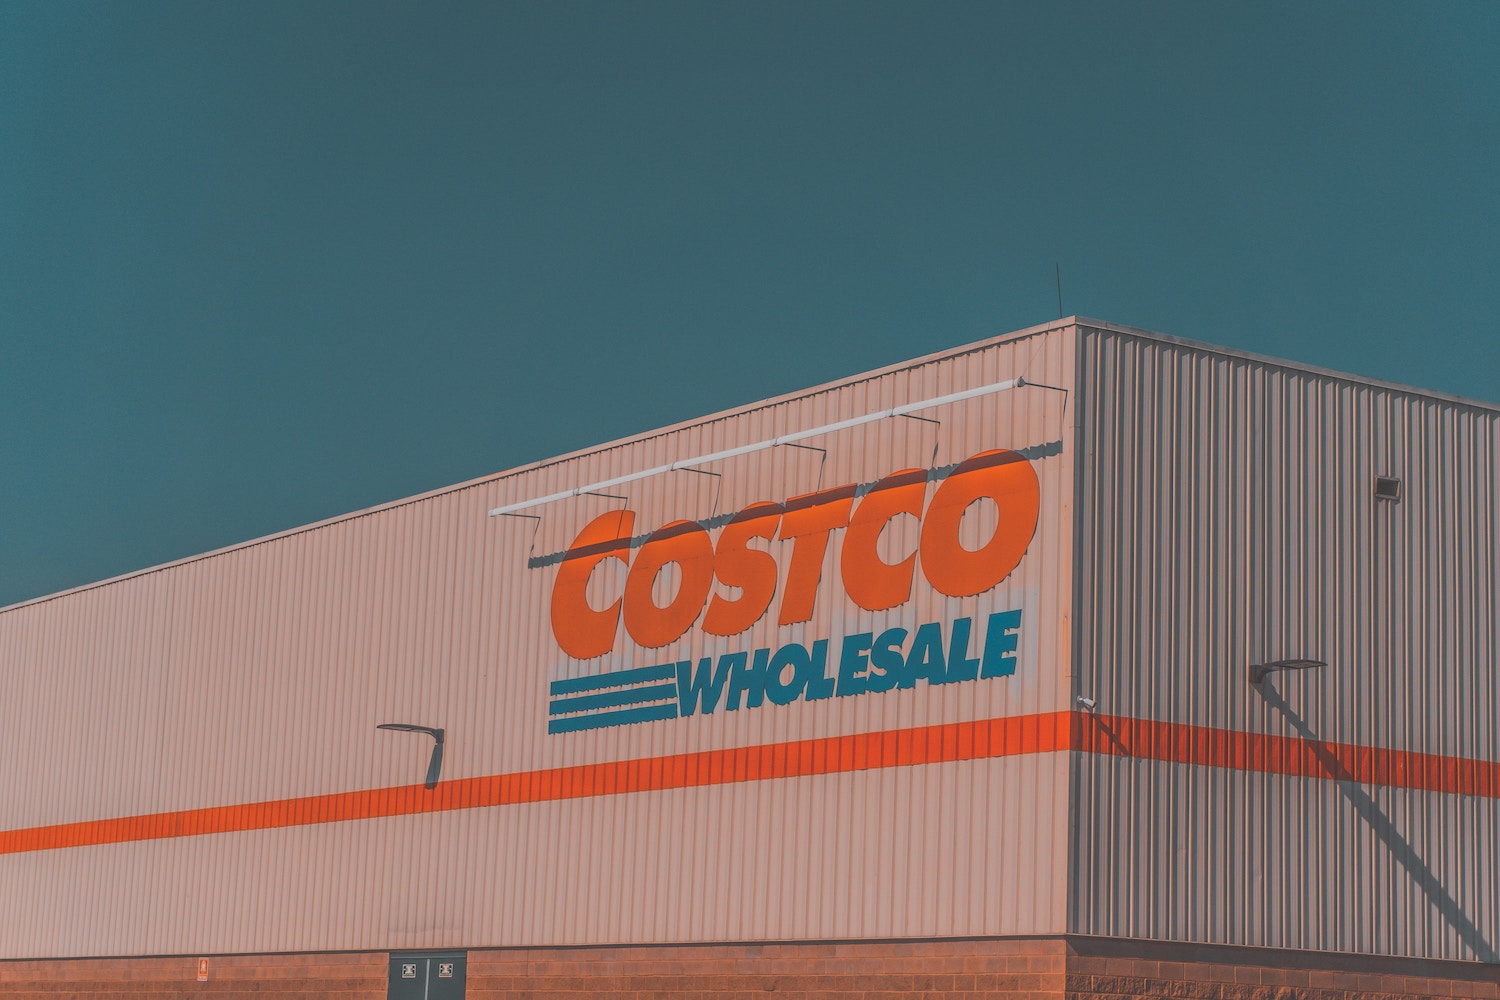 Zisk společnosti Costco za 2. čtvrtletí většinou překonal očekávání, akcie klesly o 2 %